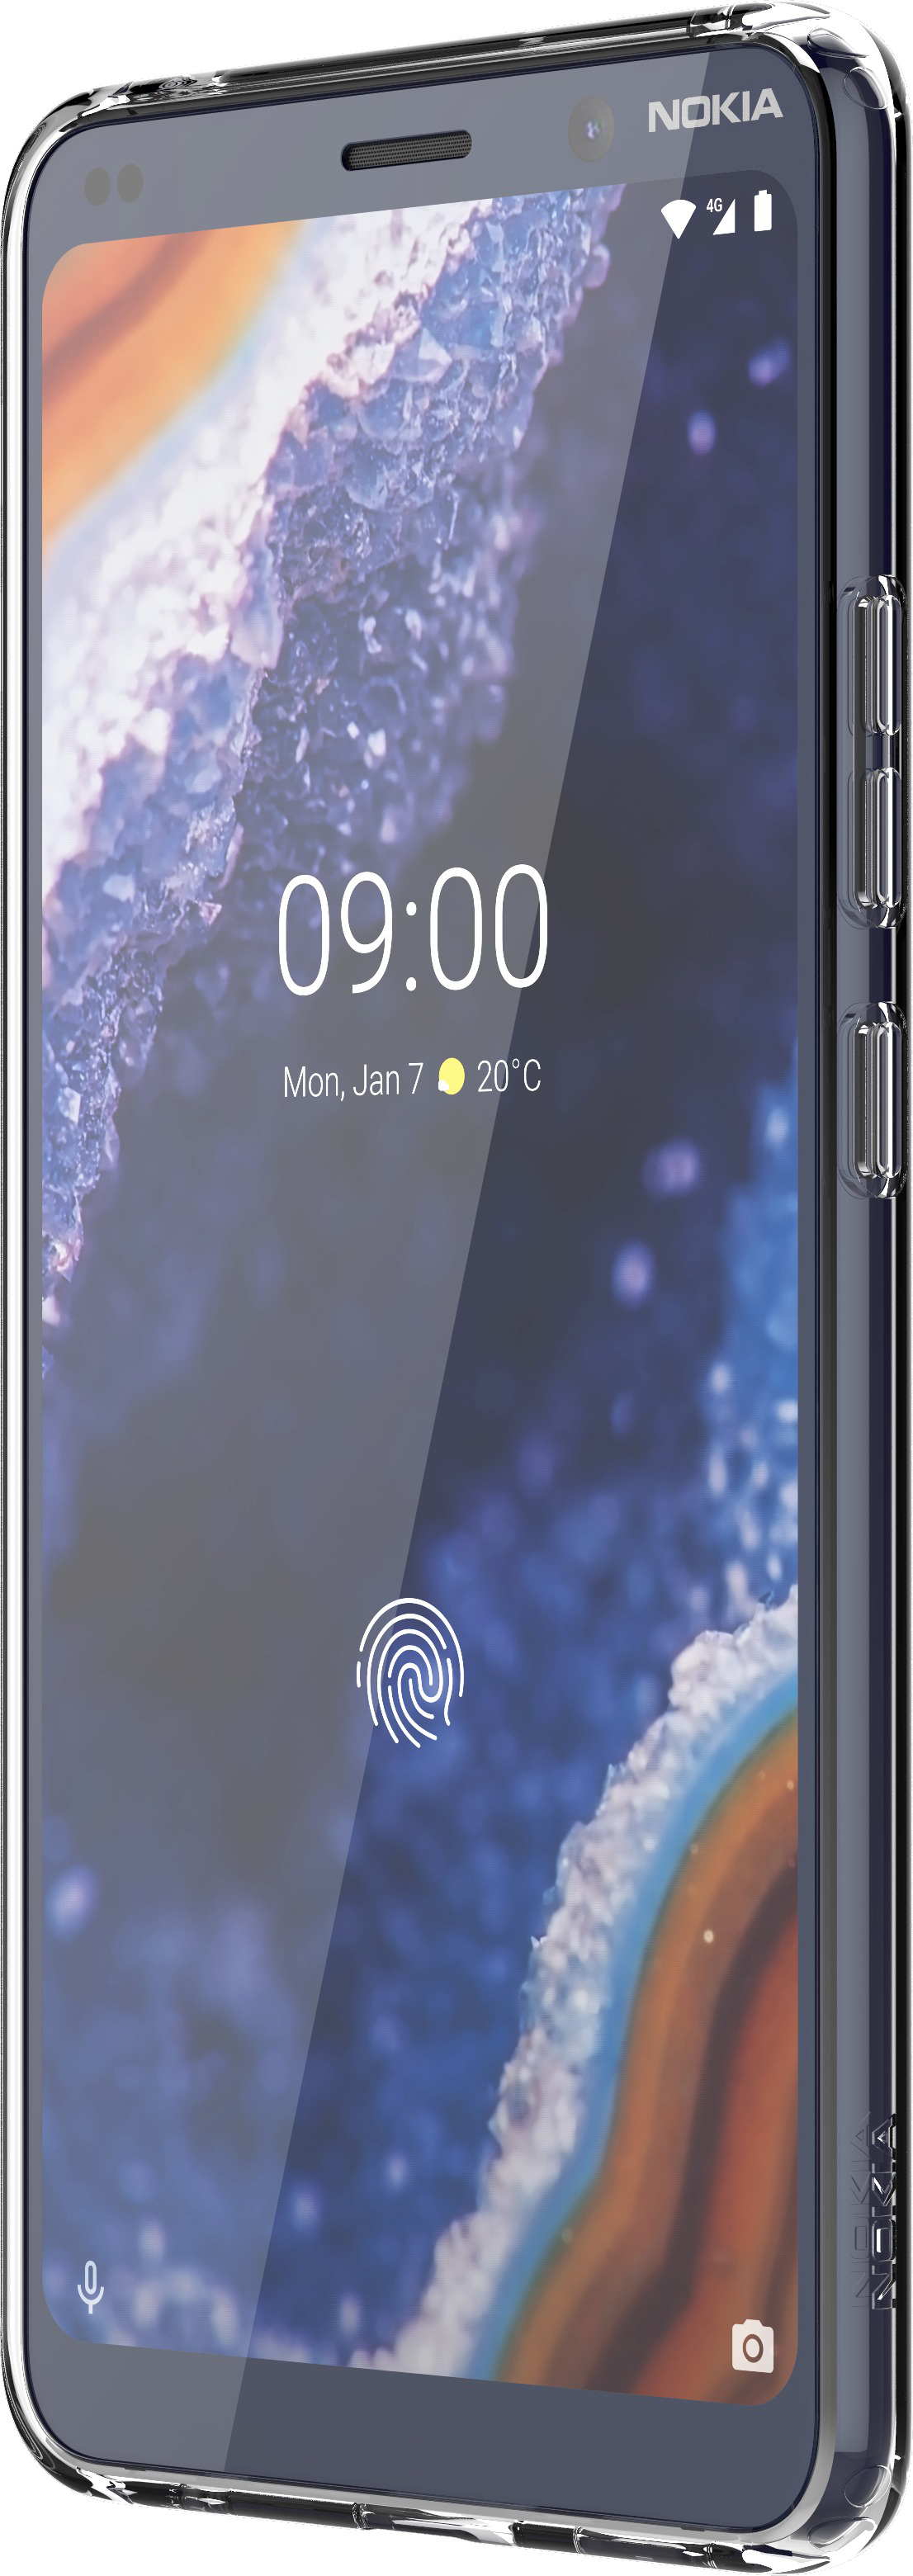 NOKIA Premium CC-190, Clear Nokia, Backcover, Transparent PureView, Case 9